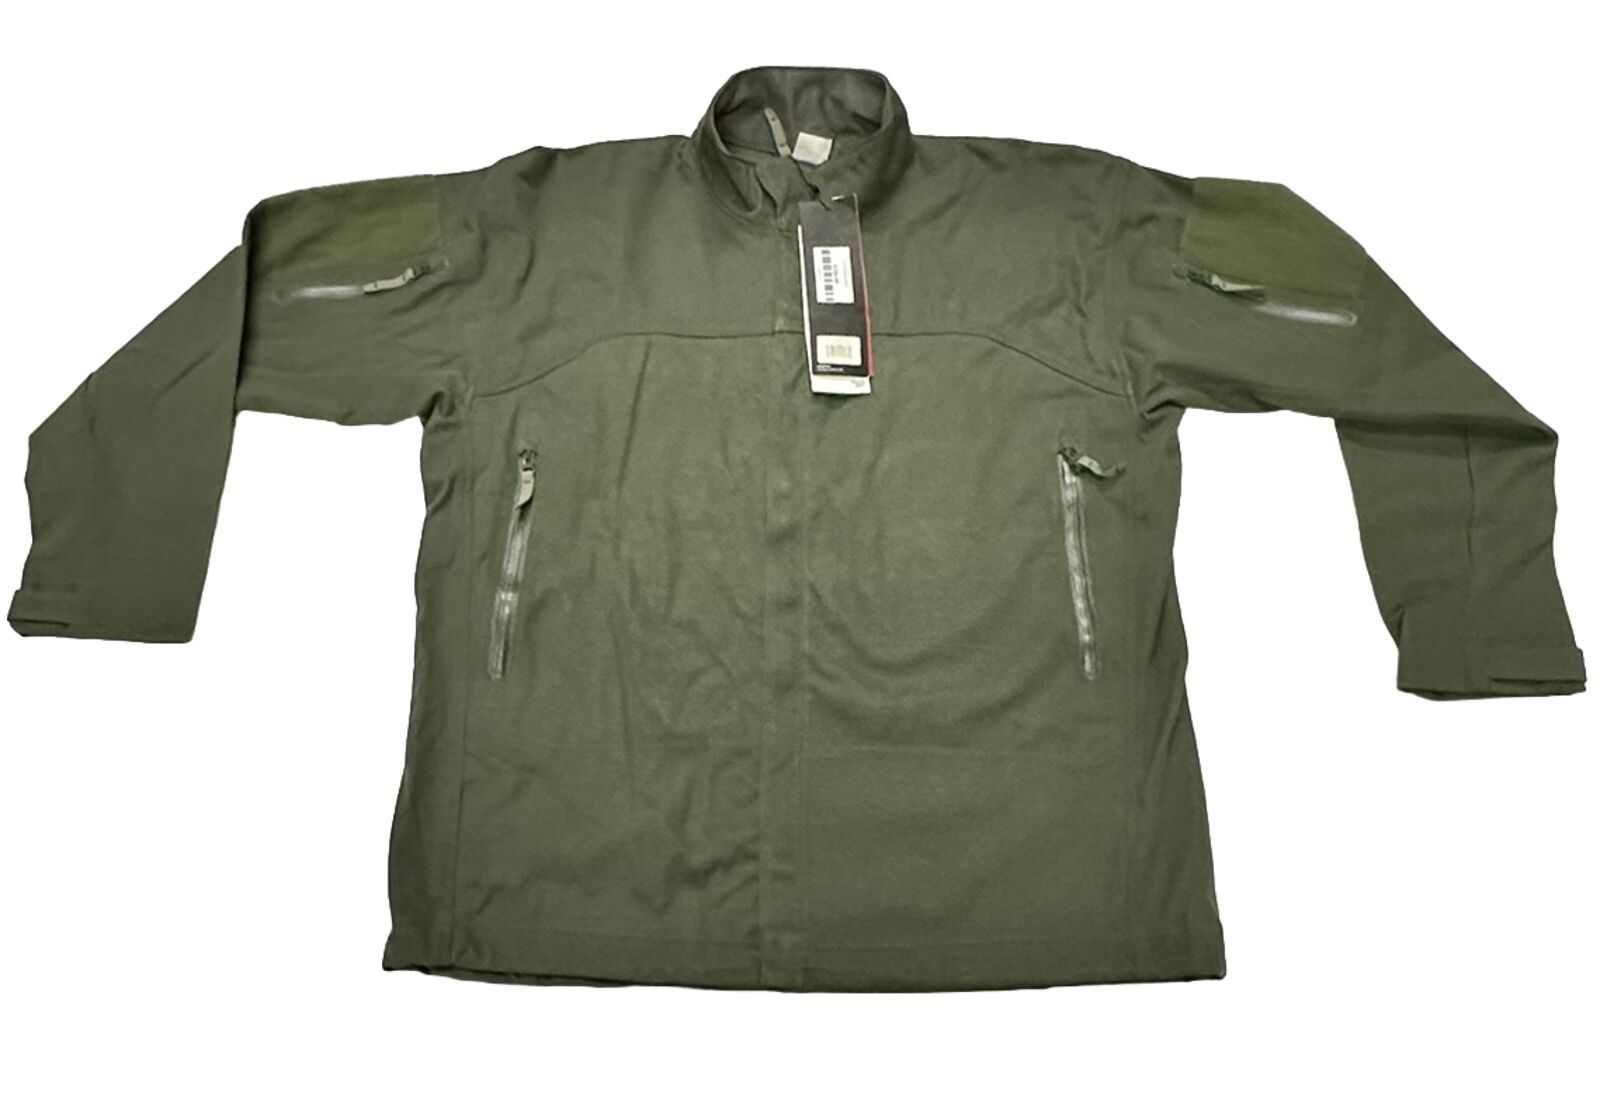 Massif Mountain Gear Lightweight Tactical Jacket, OD Green, Size Medium Reg, NOS